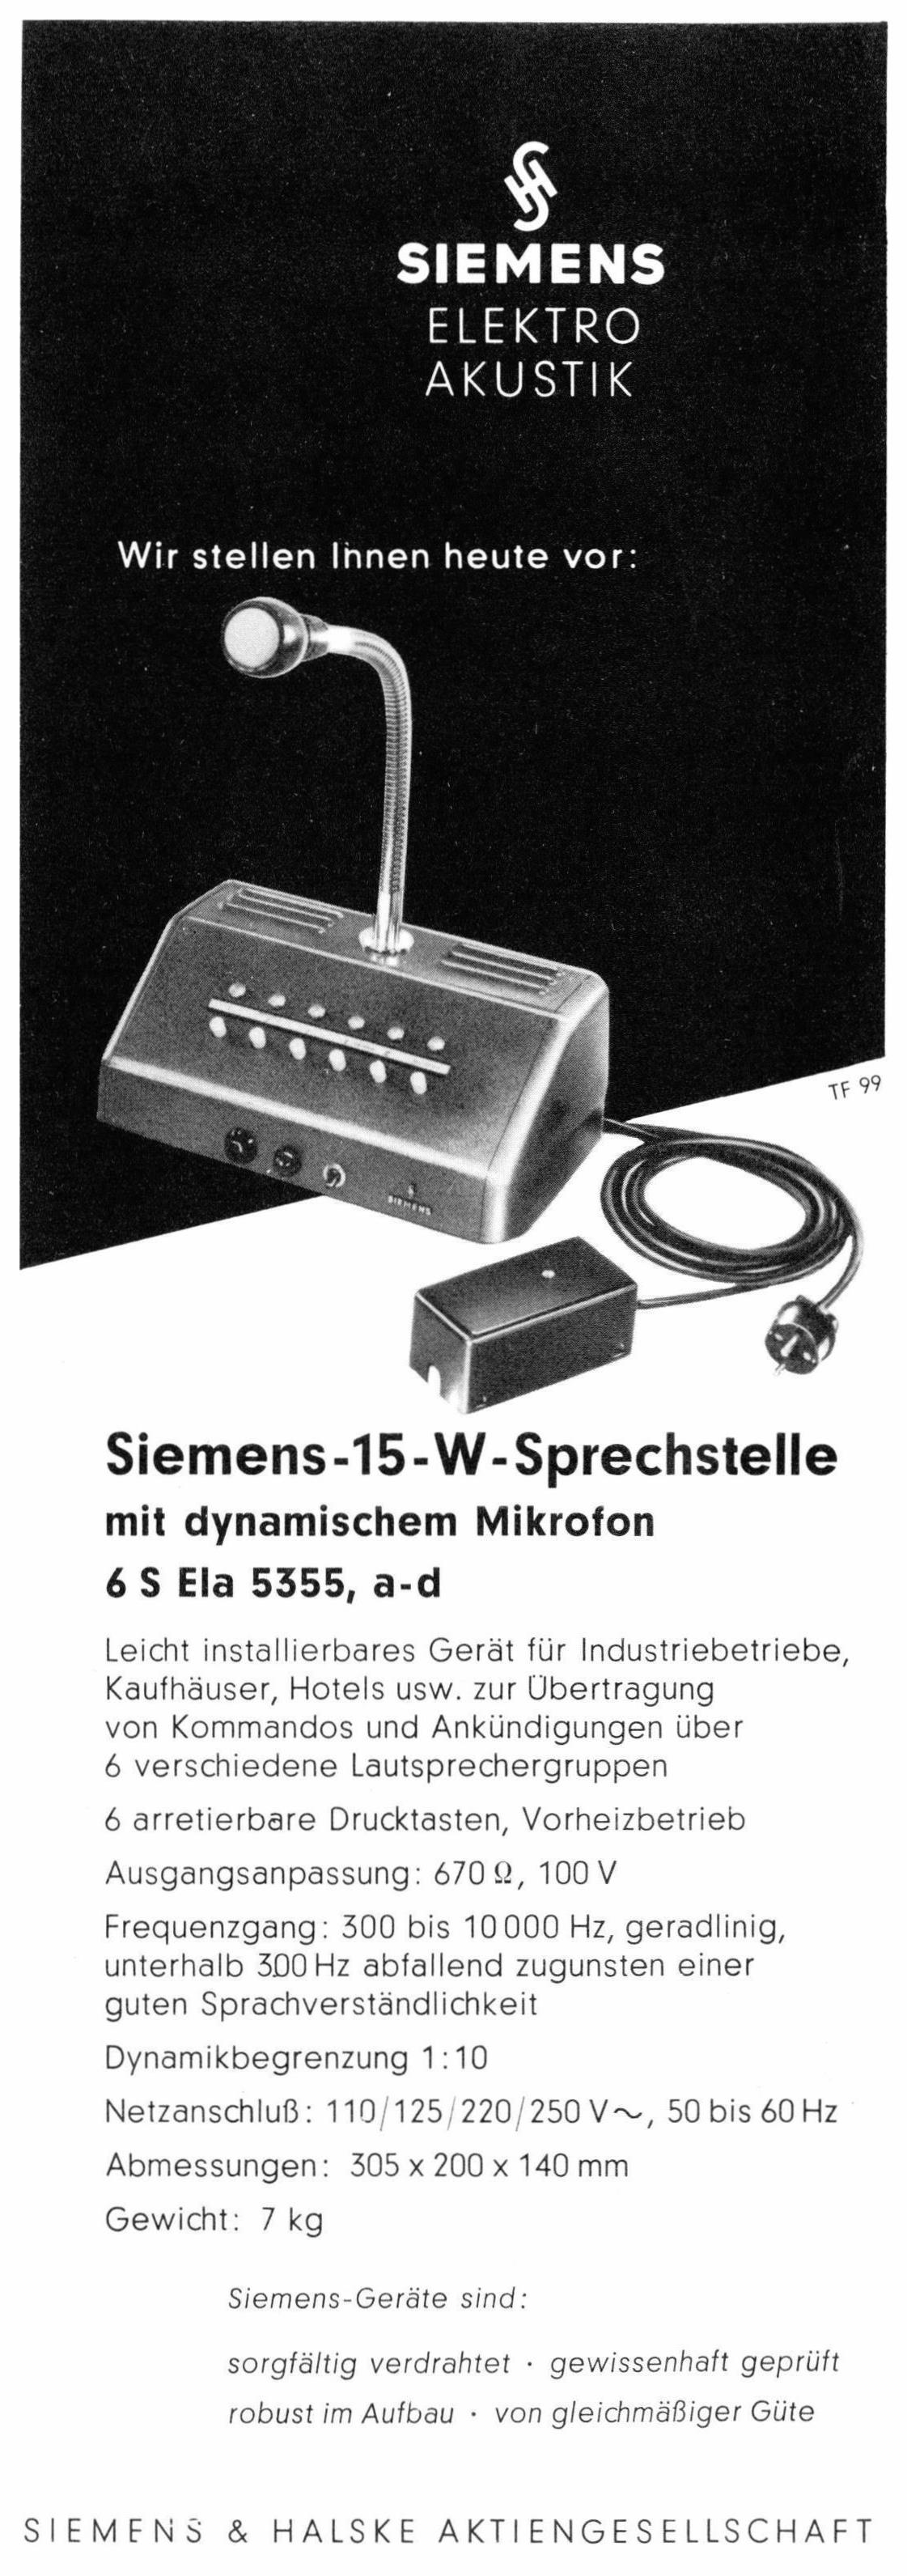 Siemens 1957 02.jpg